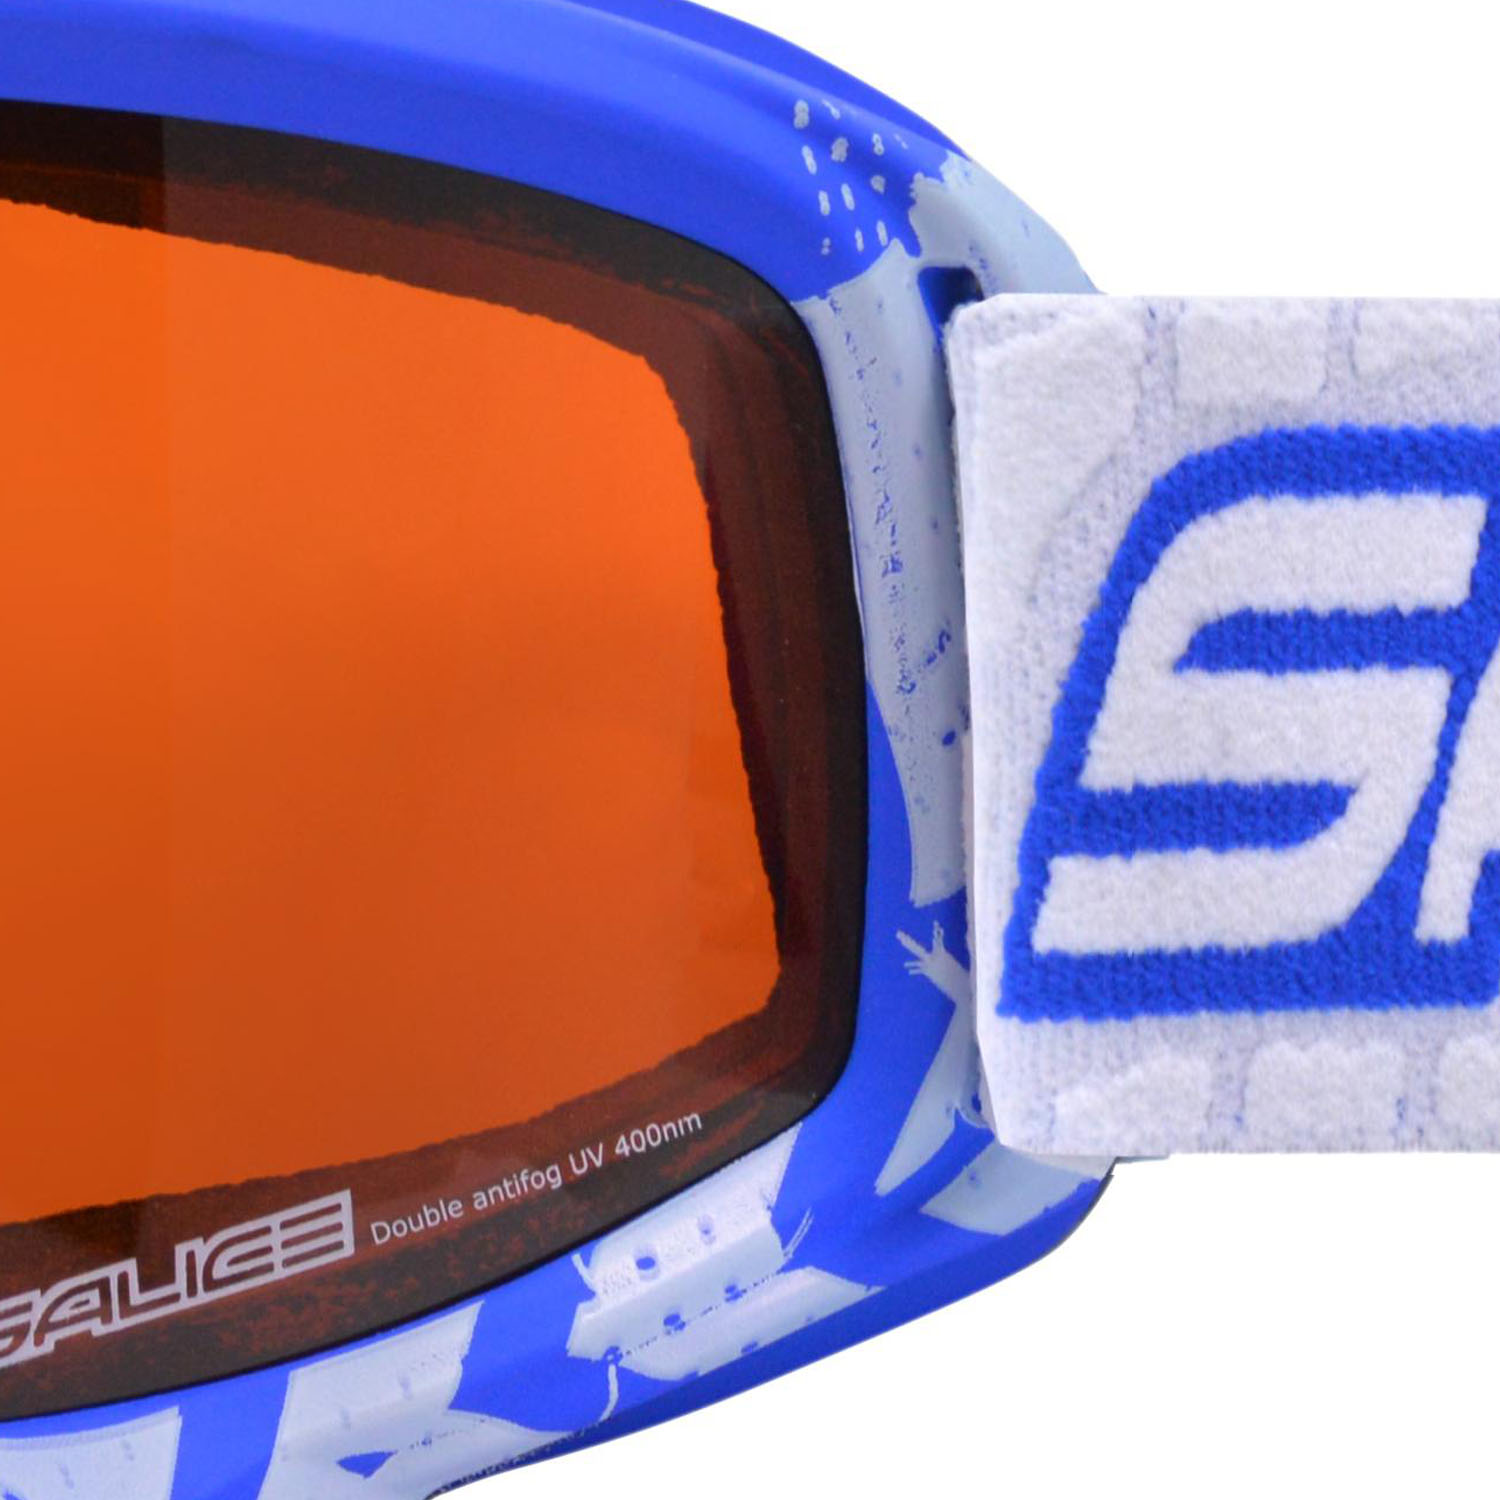 Очки горнолыжные Salice 708DAFD Blue/Da Orange S2